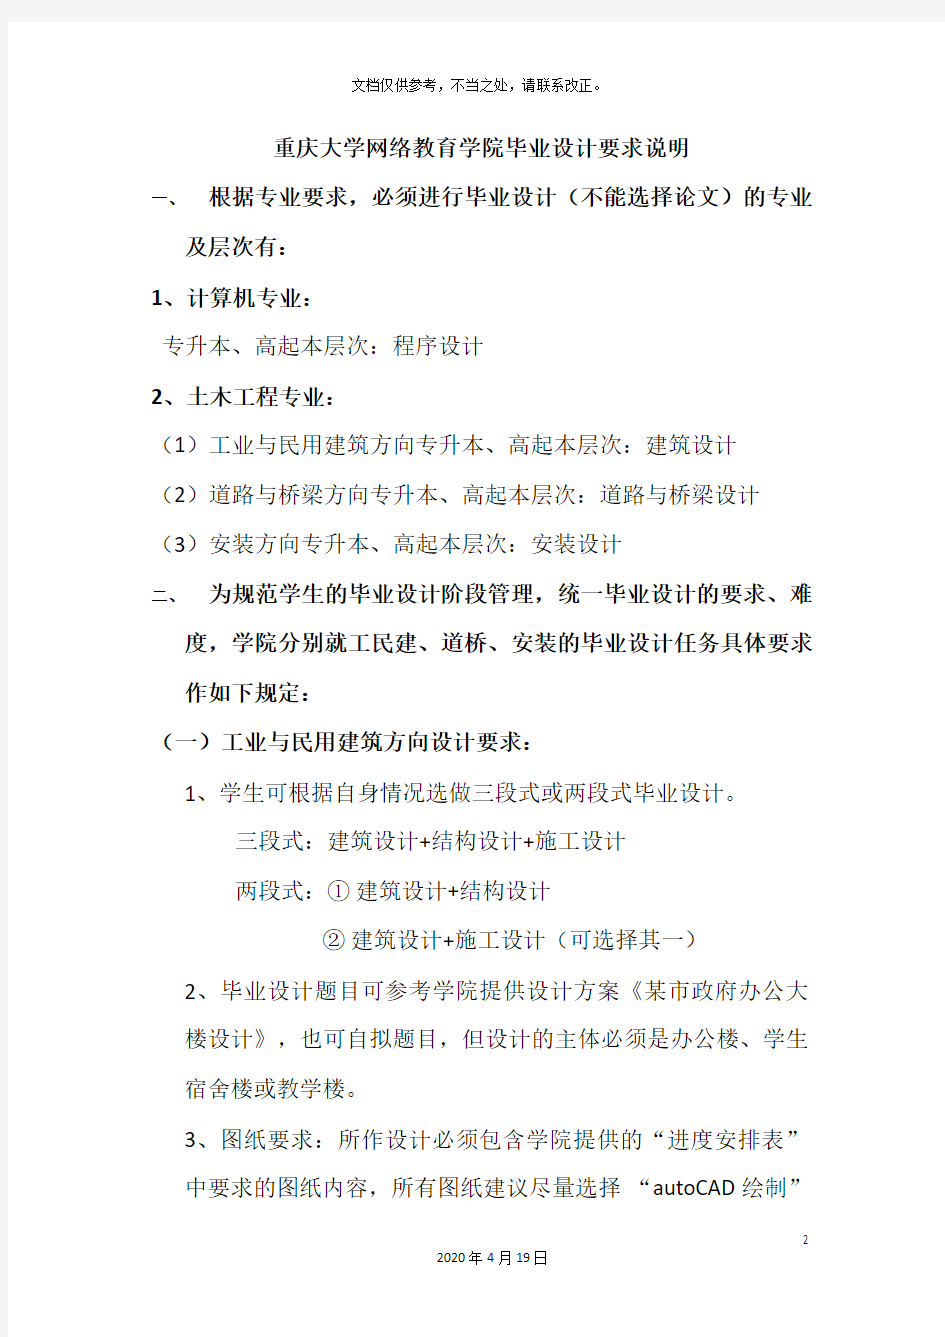 重庆大学网络教育学院毕业设计要求说明